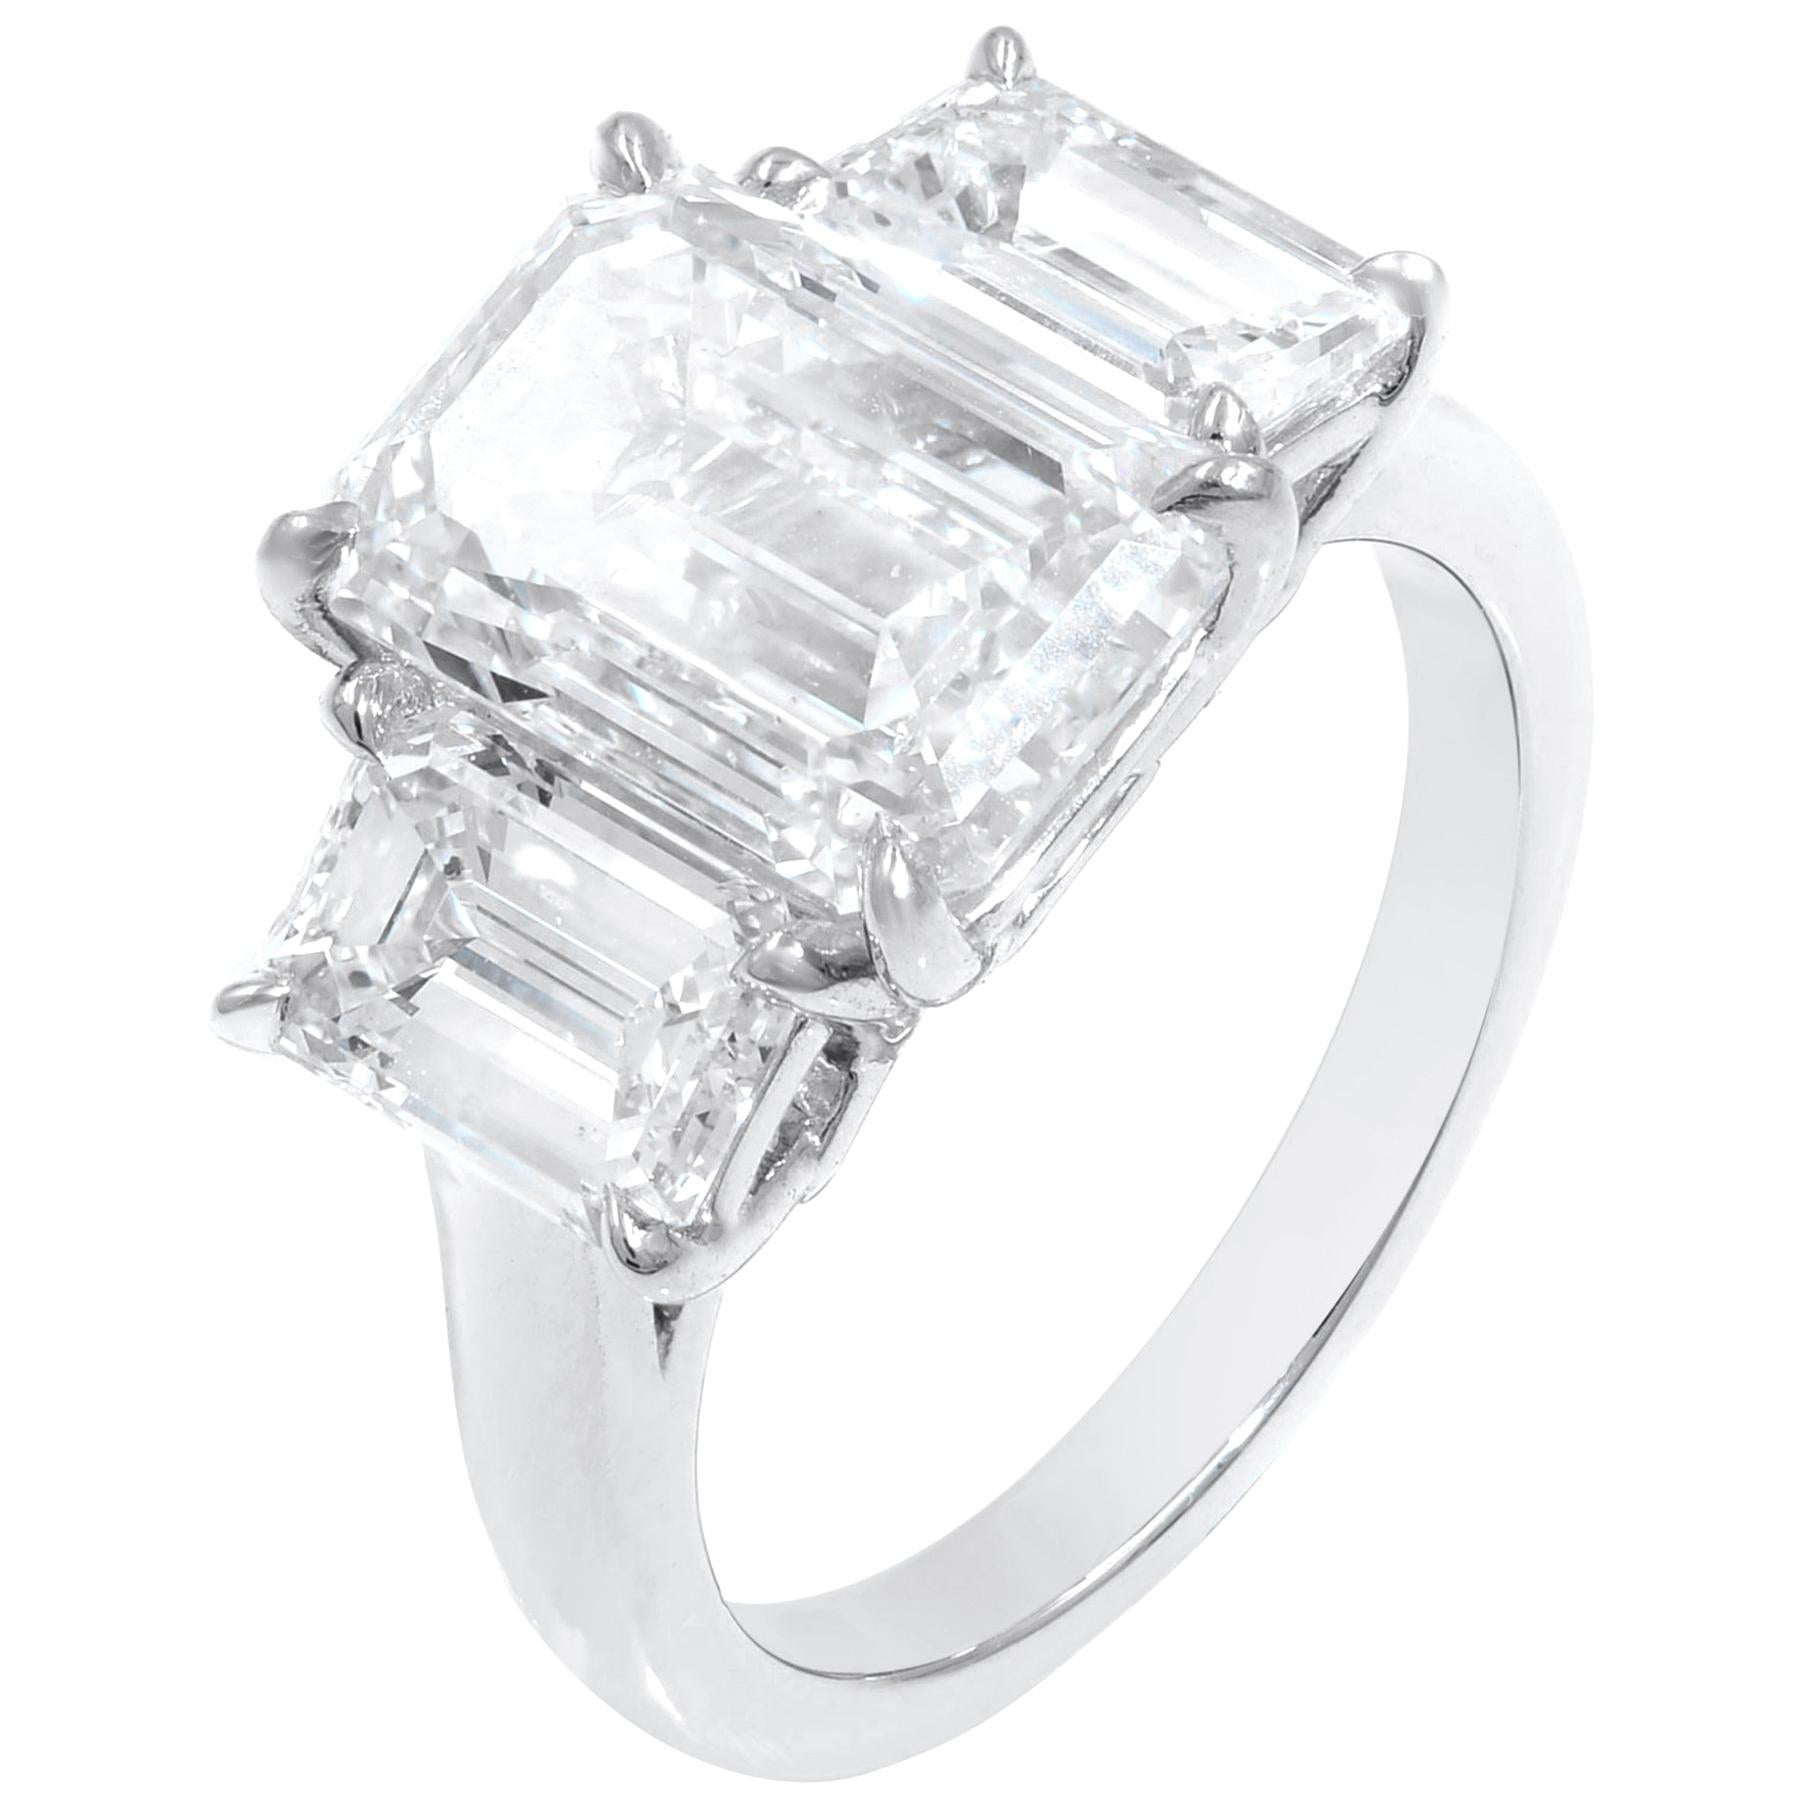 Three-Stone Diamond Engagement Ring in Platinum 6.15 Carat